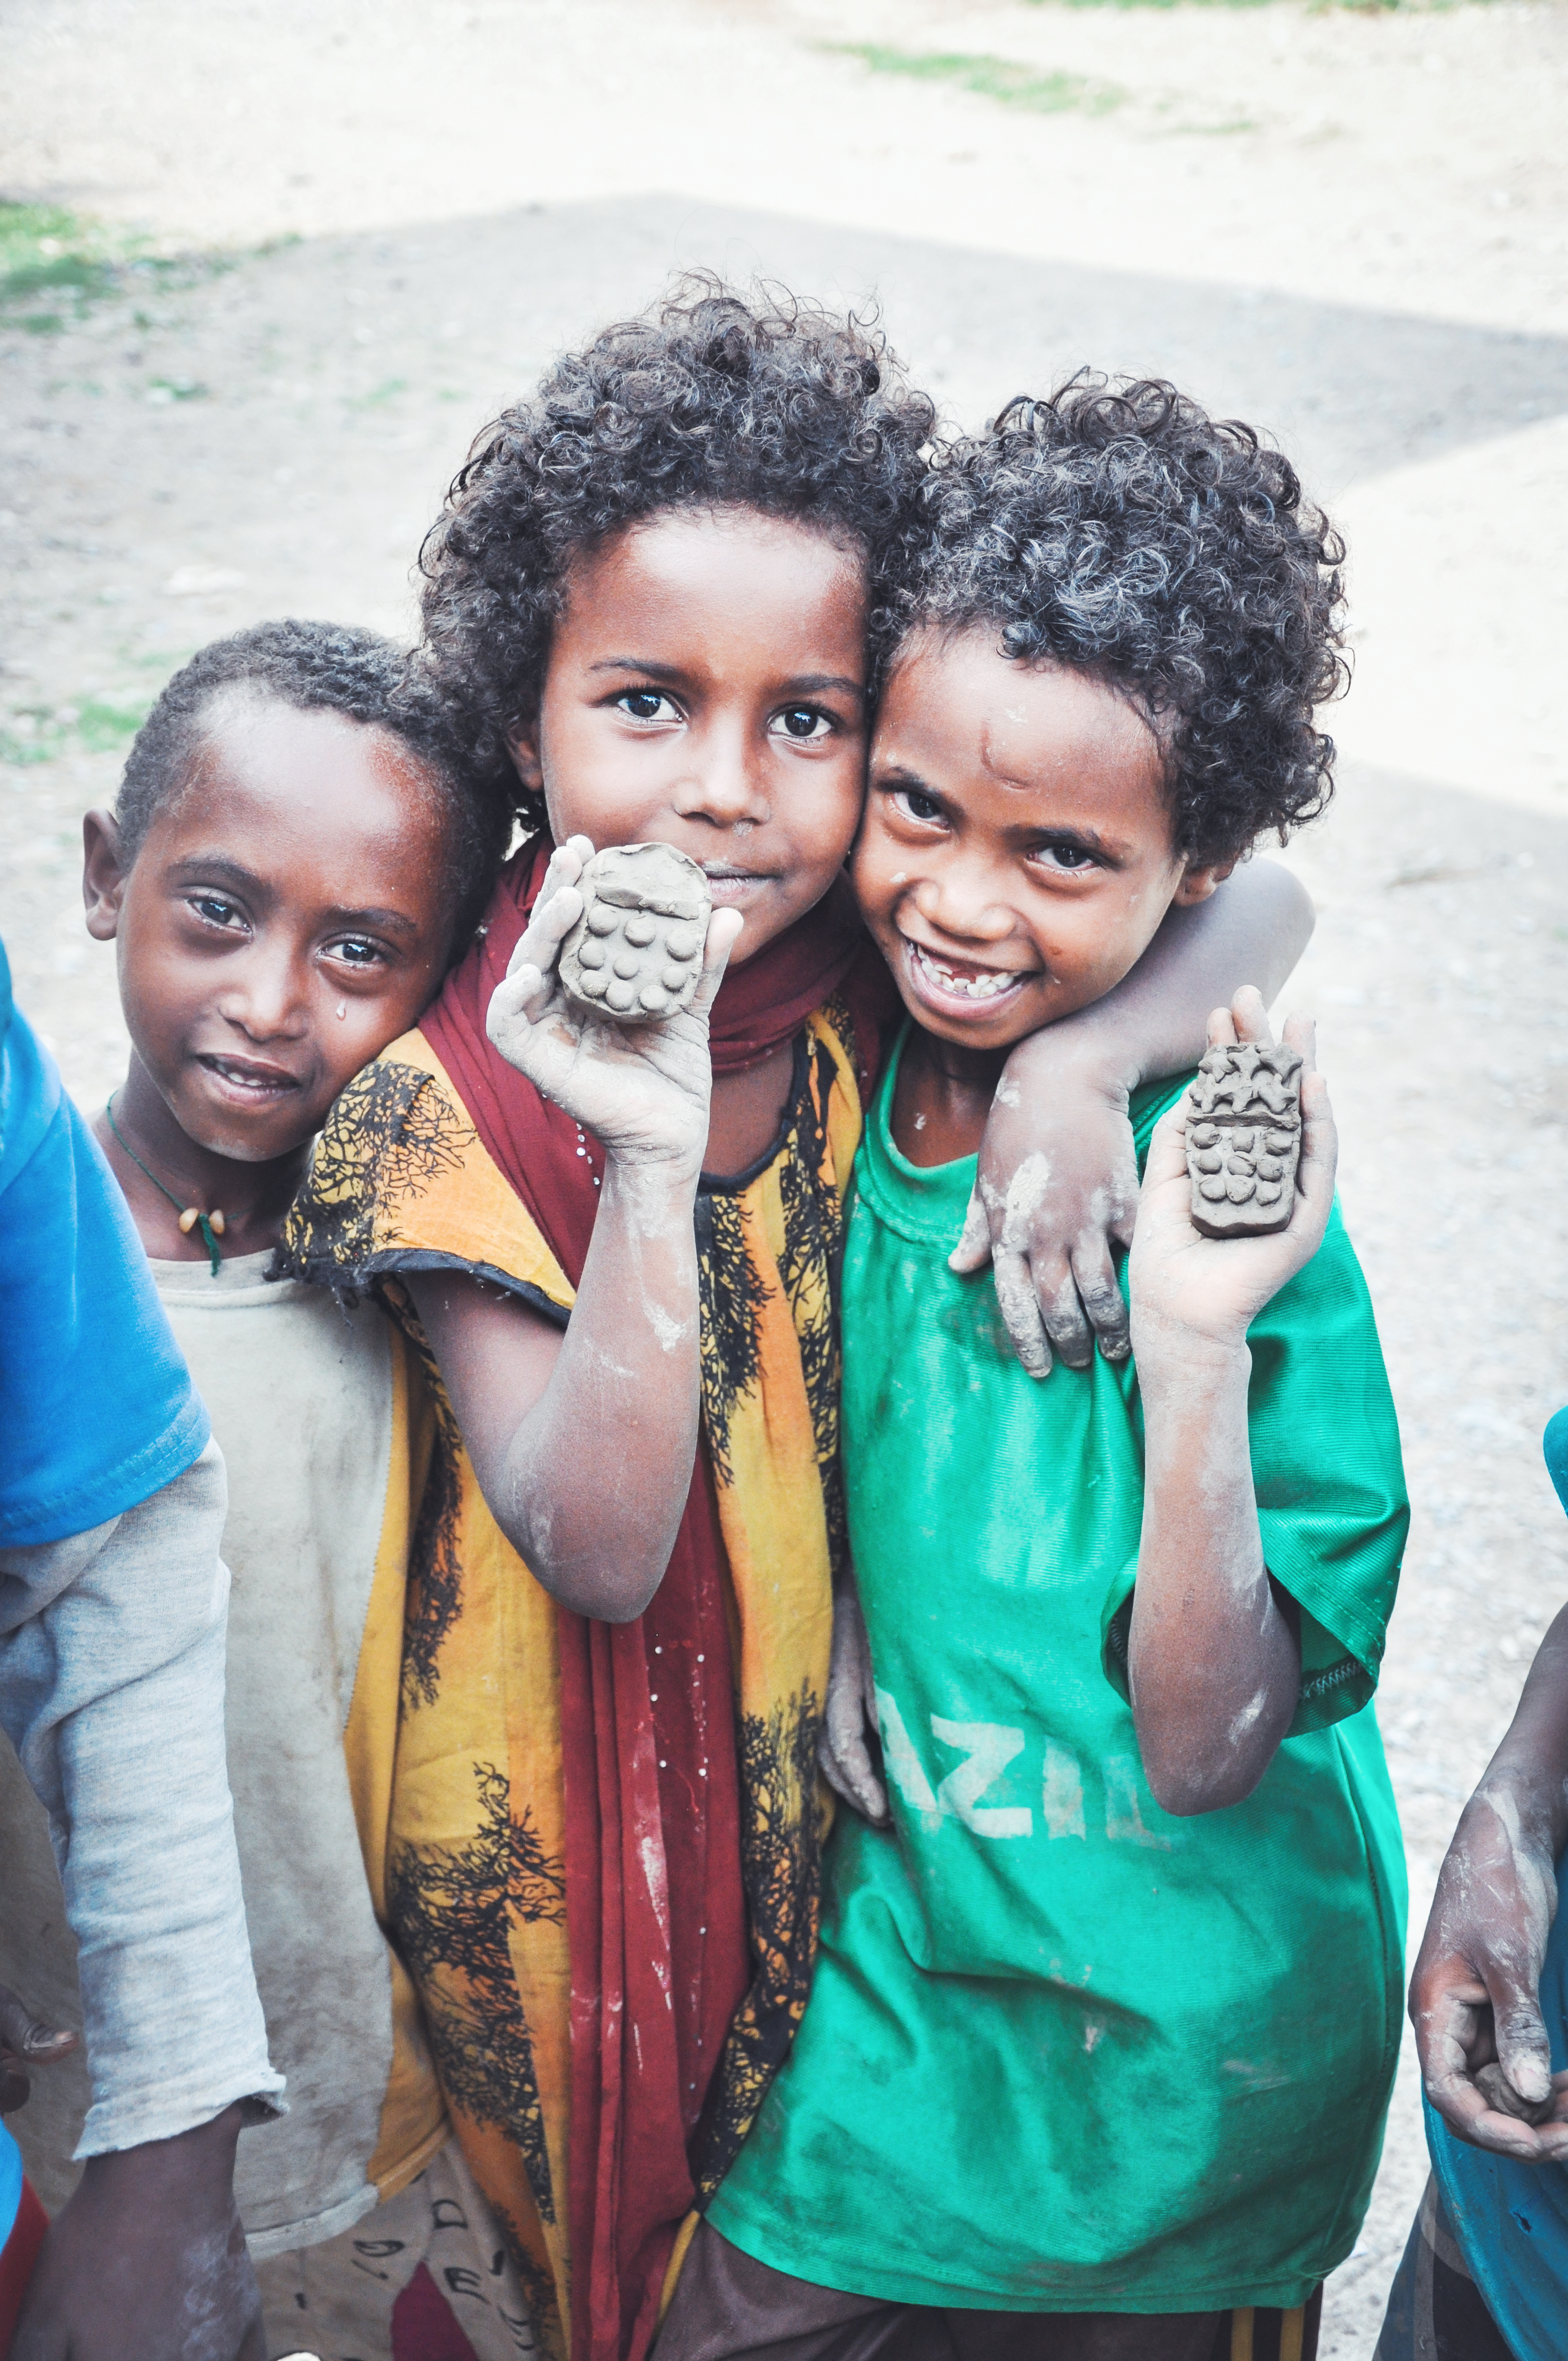 Smiling Children in Ethiopia